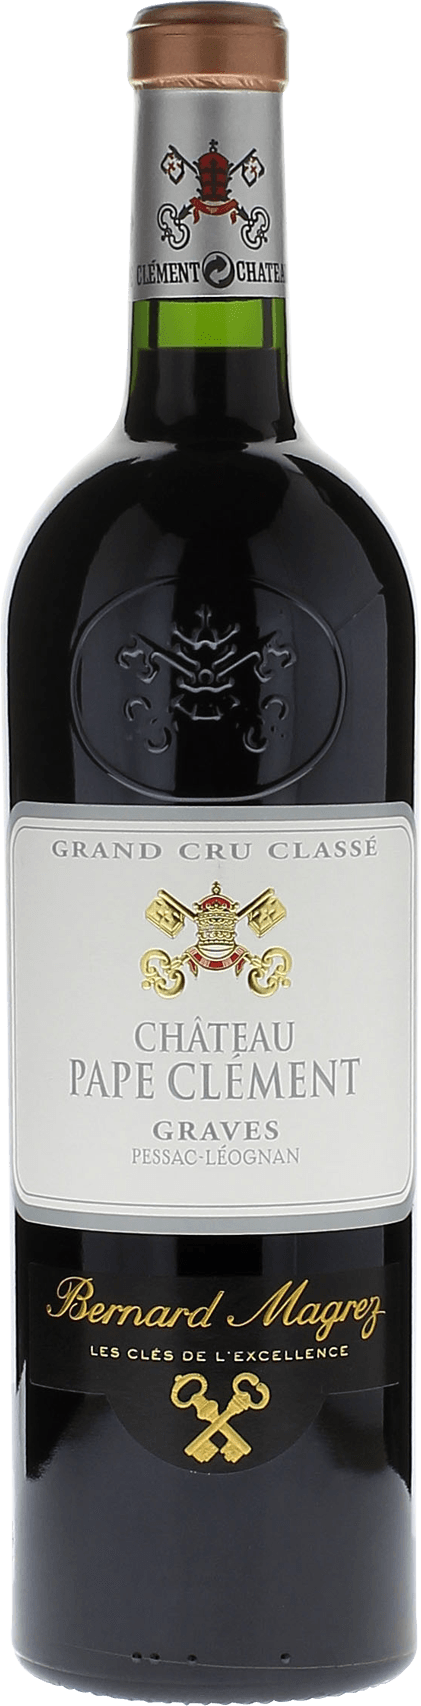 Pape clement rouge 1999 Grand Cru Class Graves, Bordeaux rouge